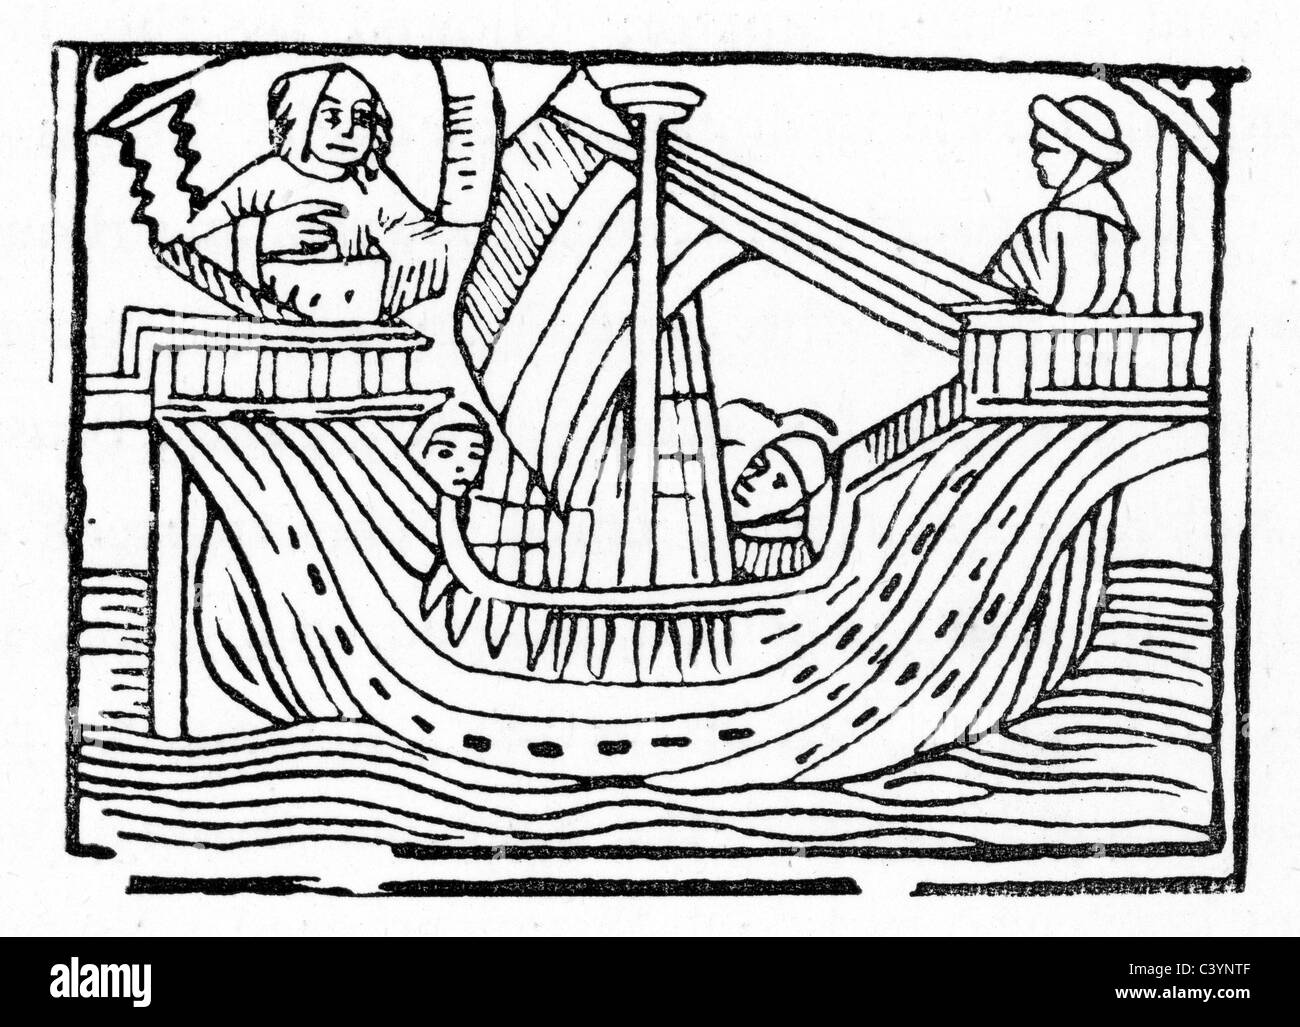 Gravure sur bois montrant Guy de Warwick La voile pour l'Angleterre. Guy de Warwick est un légendaire héros de roman anglais du 13ème siècle. Banque D'Images